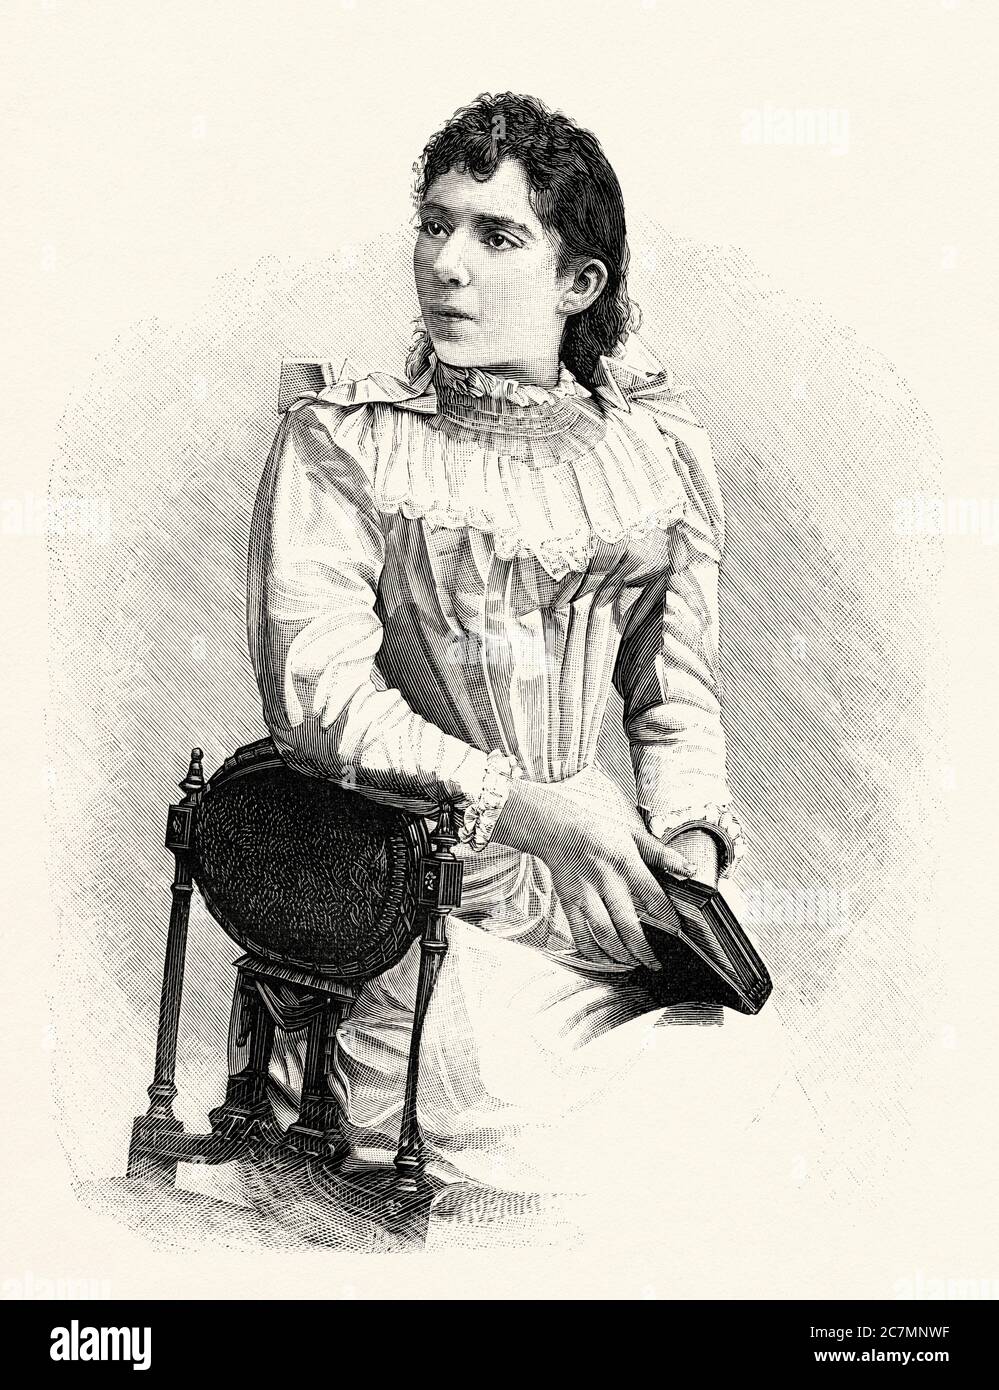 María Luisa Guerra (1869, Gualeguaychú – San Sebastián, 1949) è stato un pianista argentino. Da la Ilustracion Española y americana 1895 Foto Stock